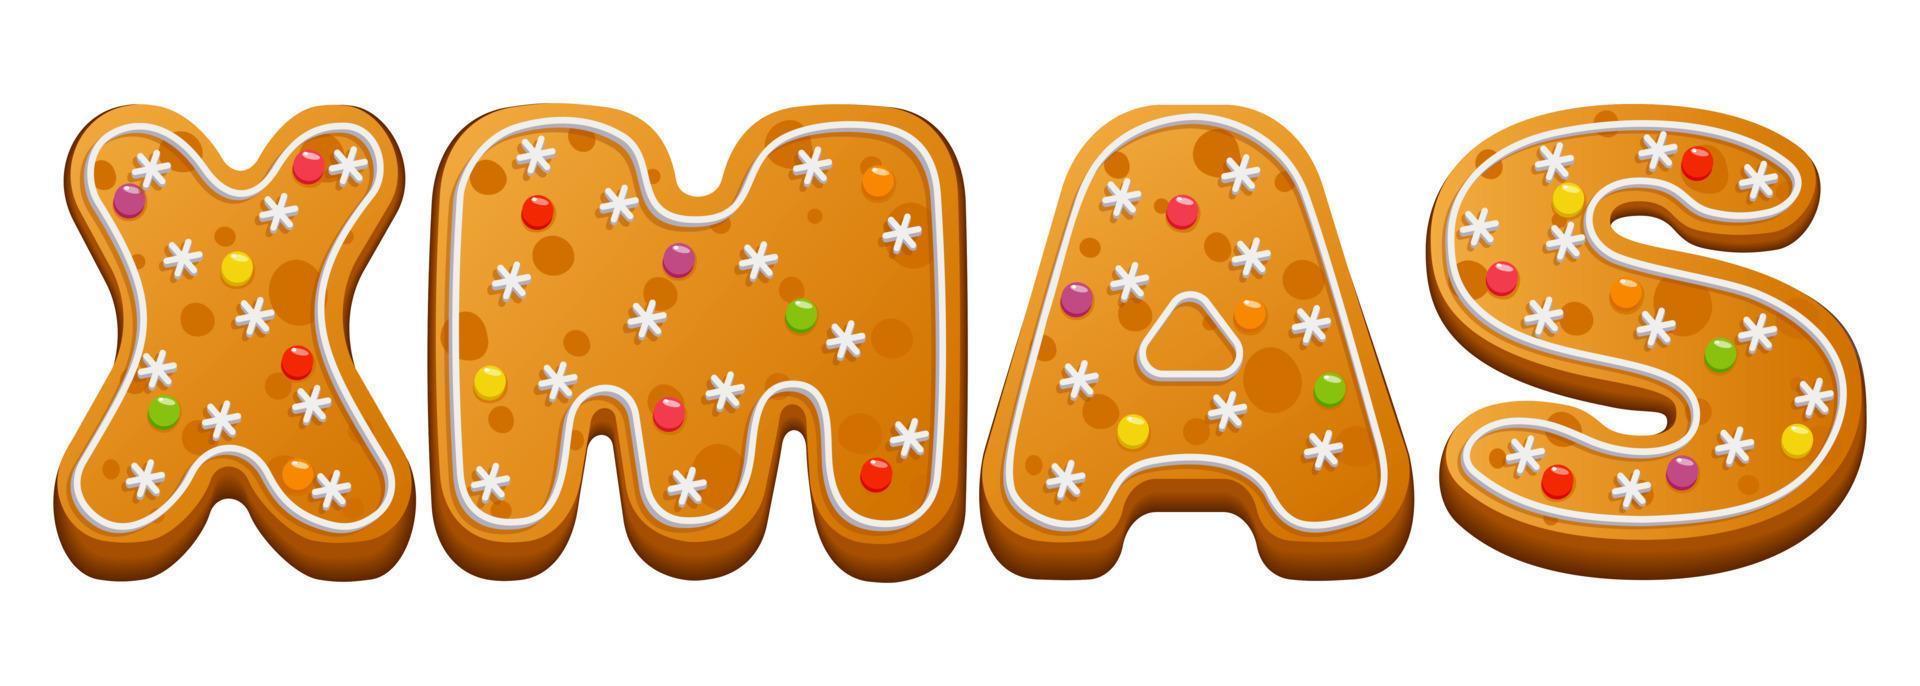 weihnachtslebkuchenplätzchen. Postkarte, Banner mit der Aufschrift Weihnachten aus Winterlebkuchen mit Zuckerguss und Marmelade. Vektor-Illustration. vektor